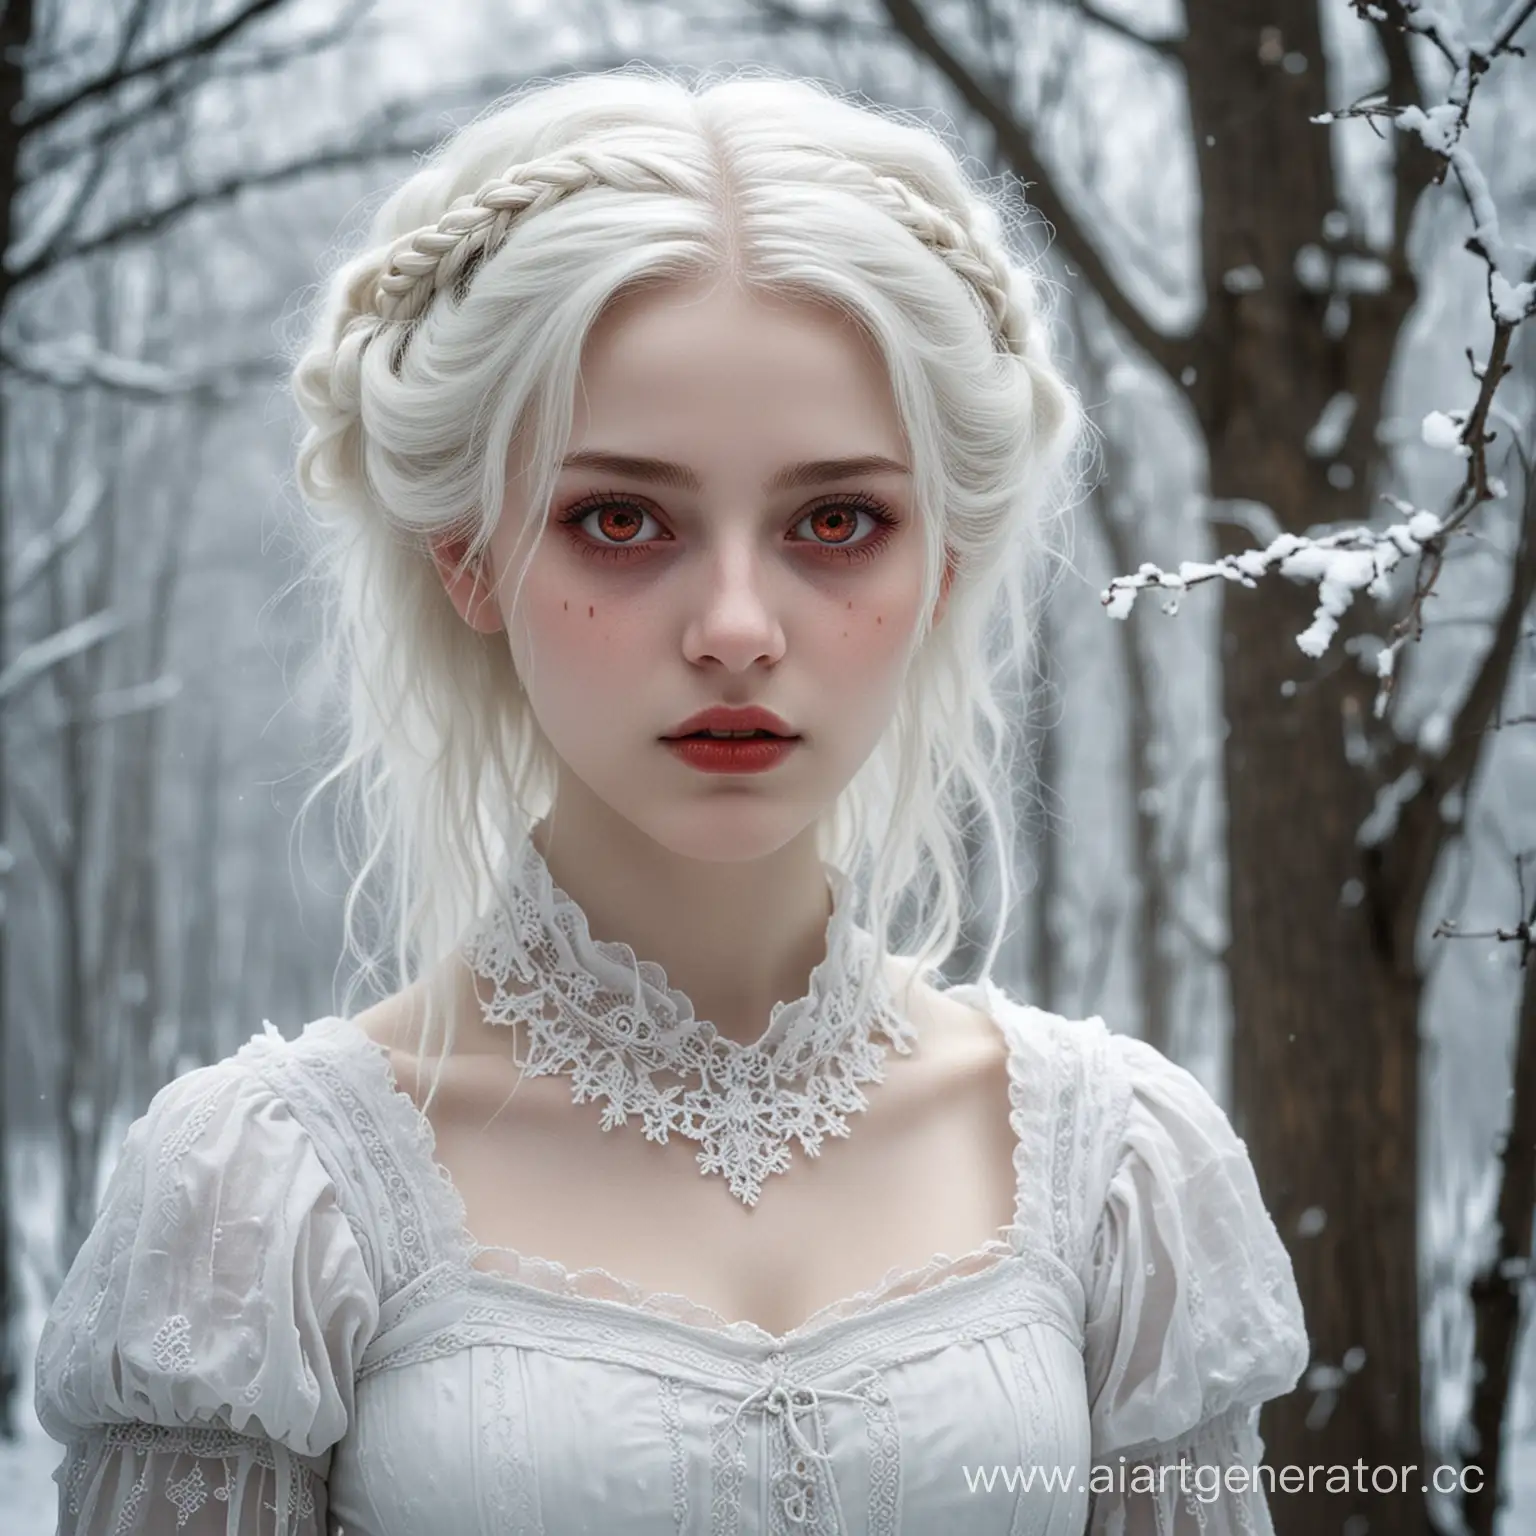 Миловидная молодая девушка. Кожа её бледная, словно фарфоровая. Волосы белые, как снег, опускаются ниже плеч. Ярко выделяются кроваво-красные глаза. Весь её образ кажется одновременно и завораживающим, и пугающим. 